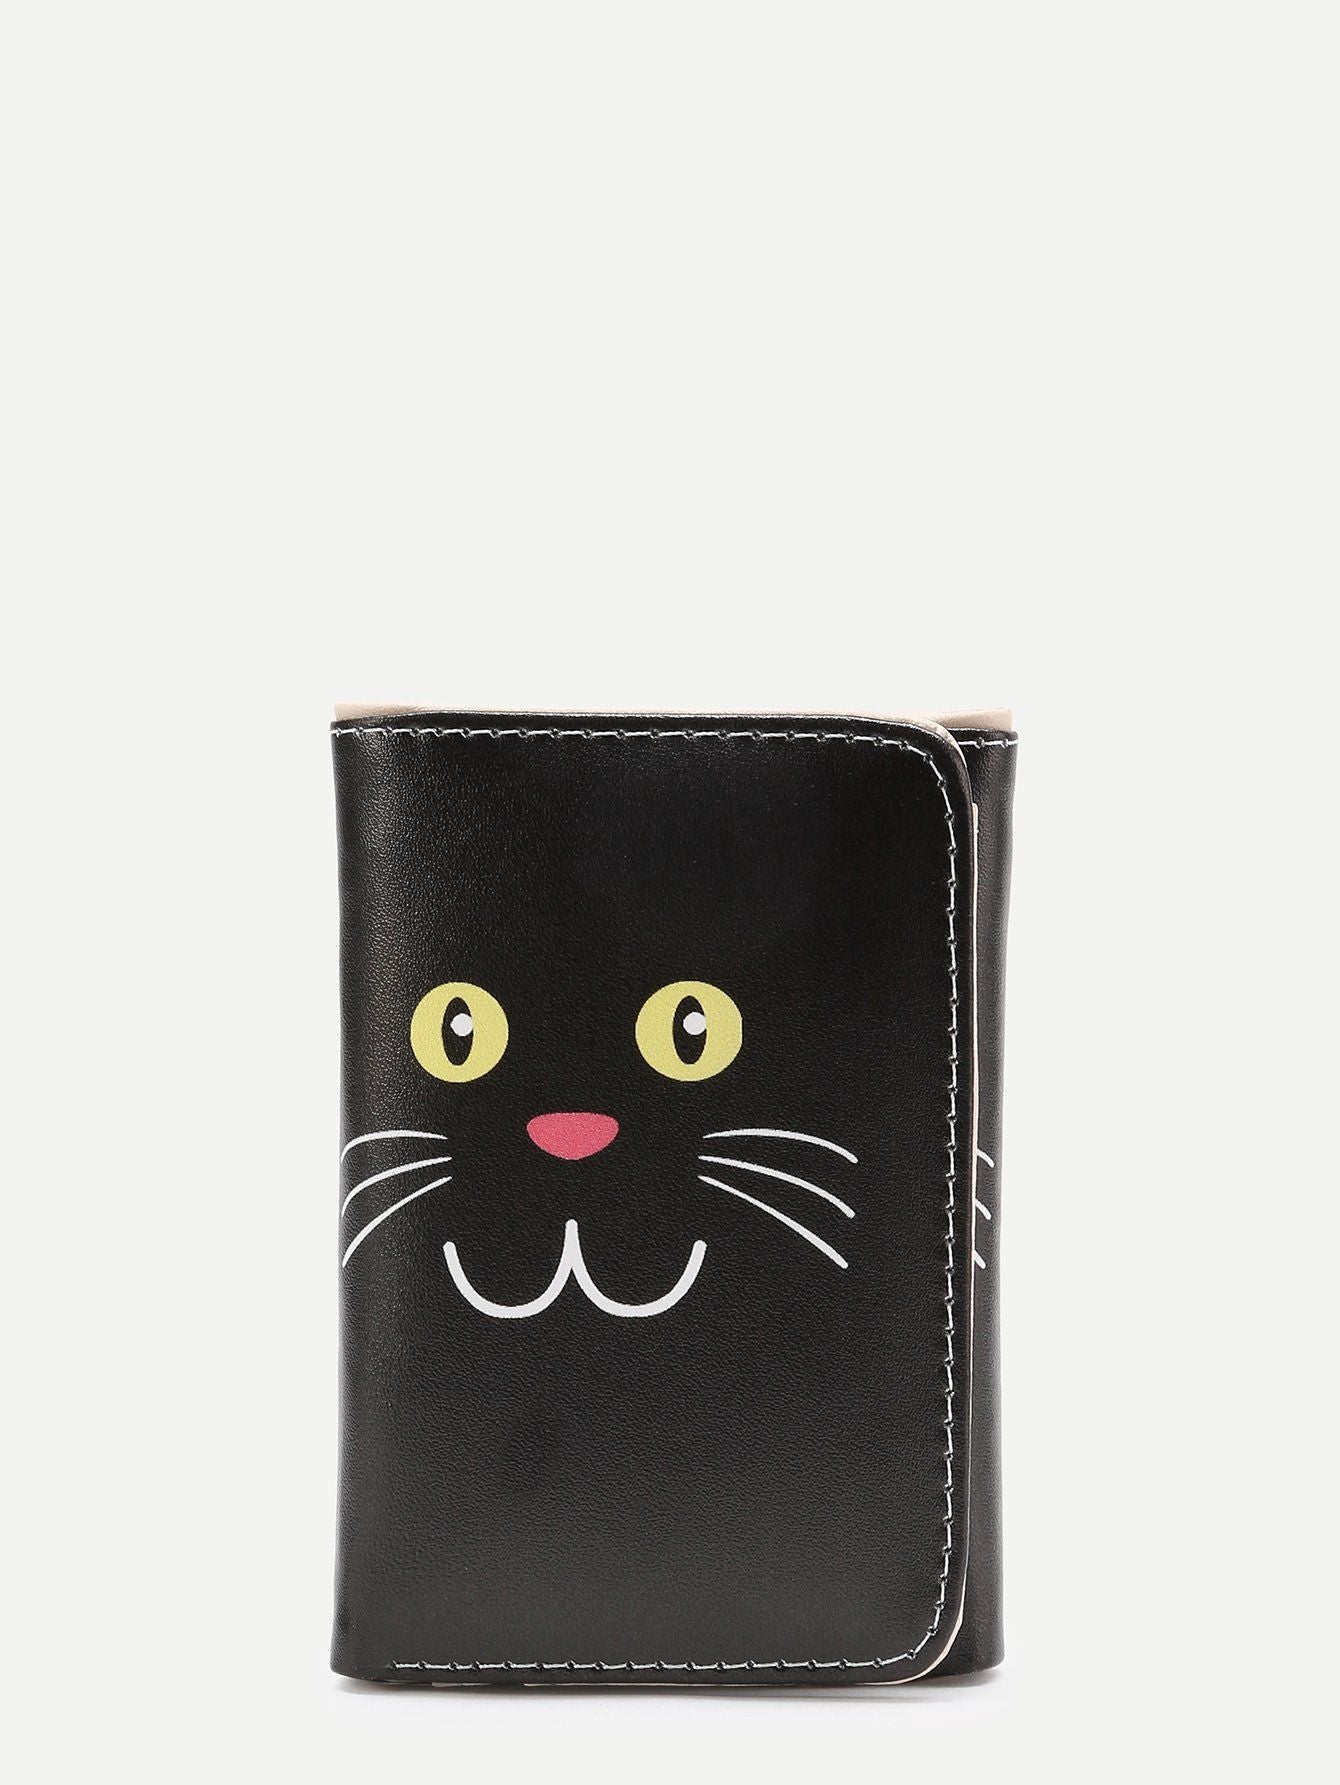 محفظة نقود جلد صناعي طباعة القطة الصغيره محافظ متوفر 1 لون اسود 